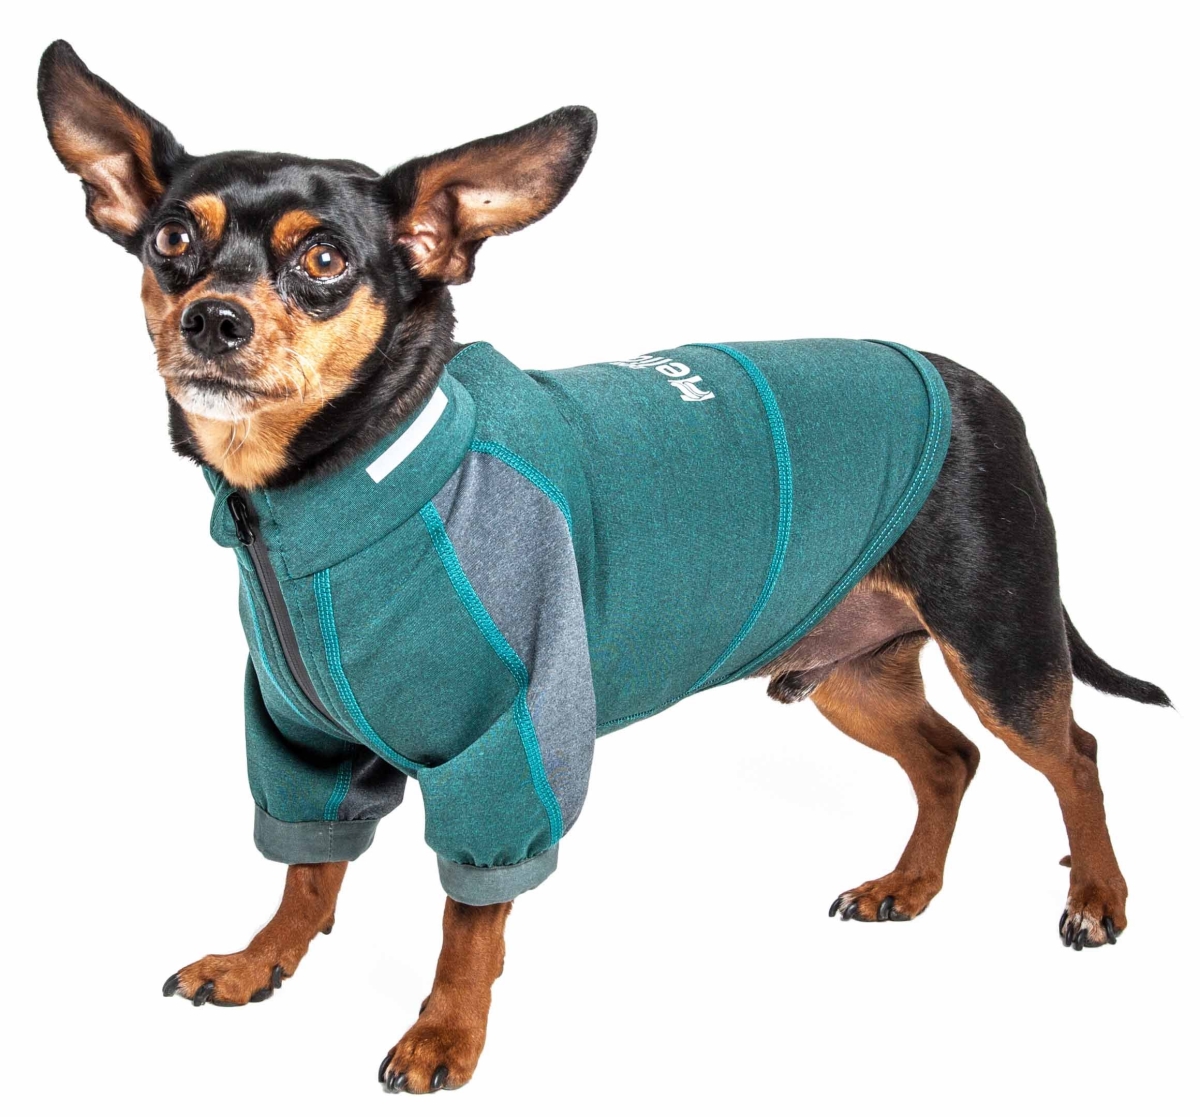 Tshl6gnlg Eboneflow Mediumweight 4-way-stretch Flexible & Breathable Performance Dog Yoga T-shirt, Forest Green & Grey - Large